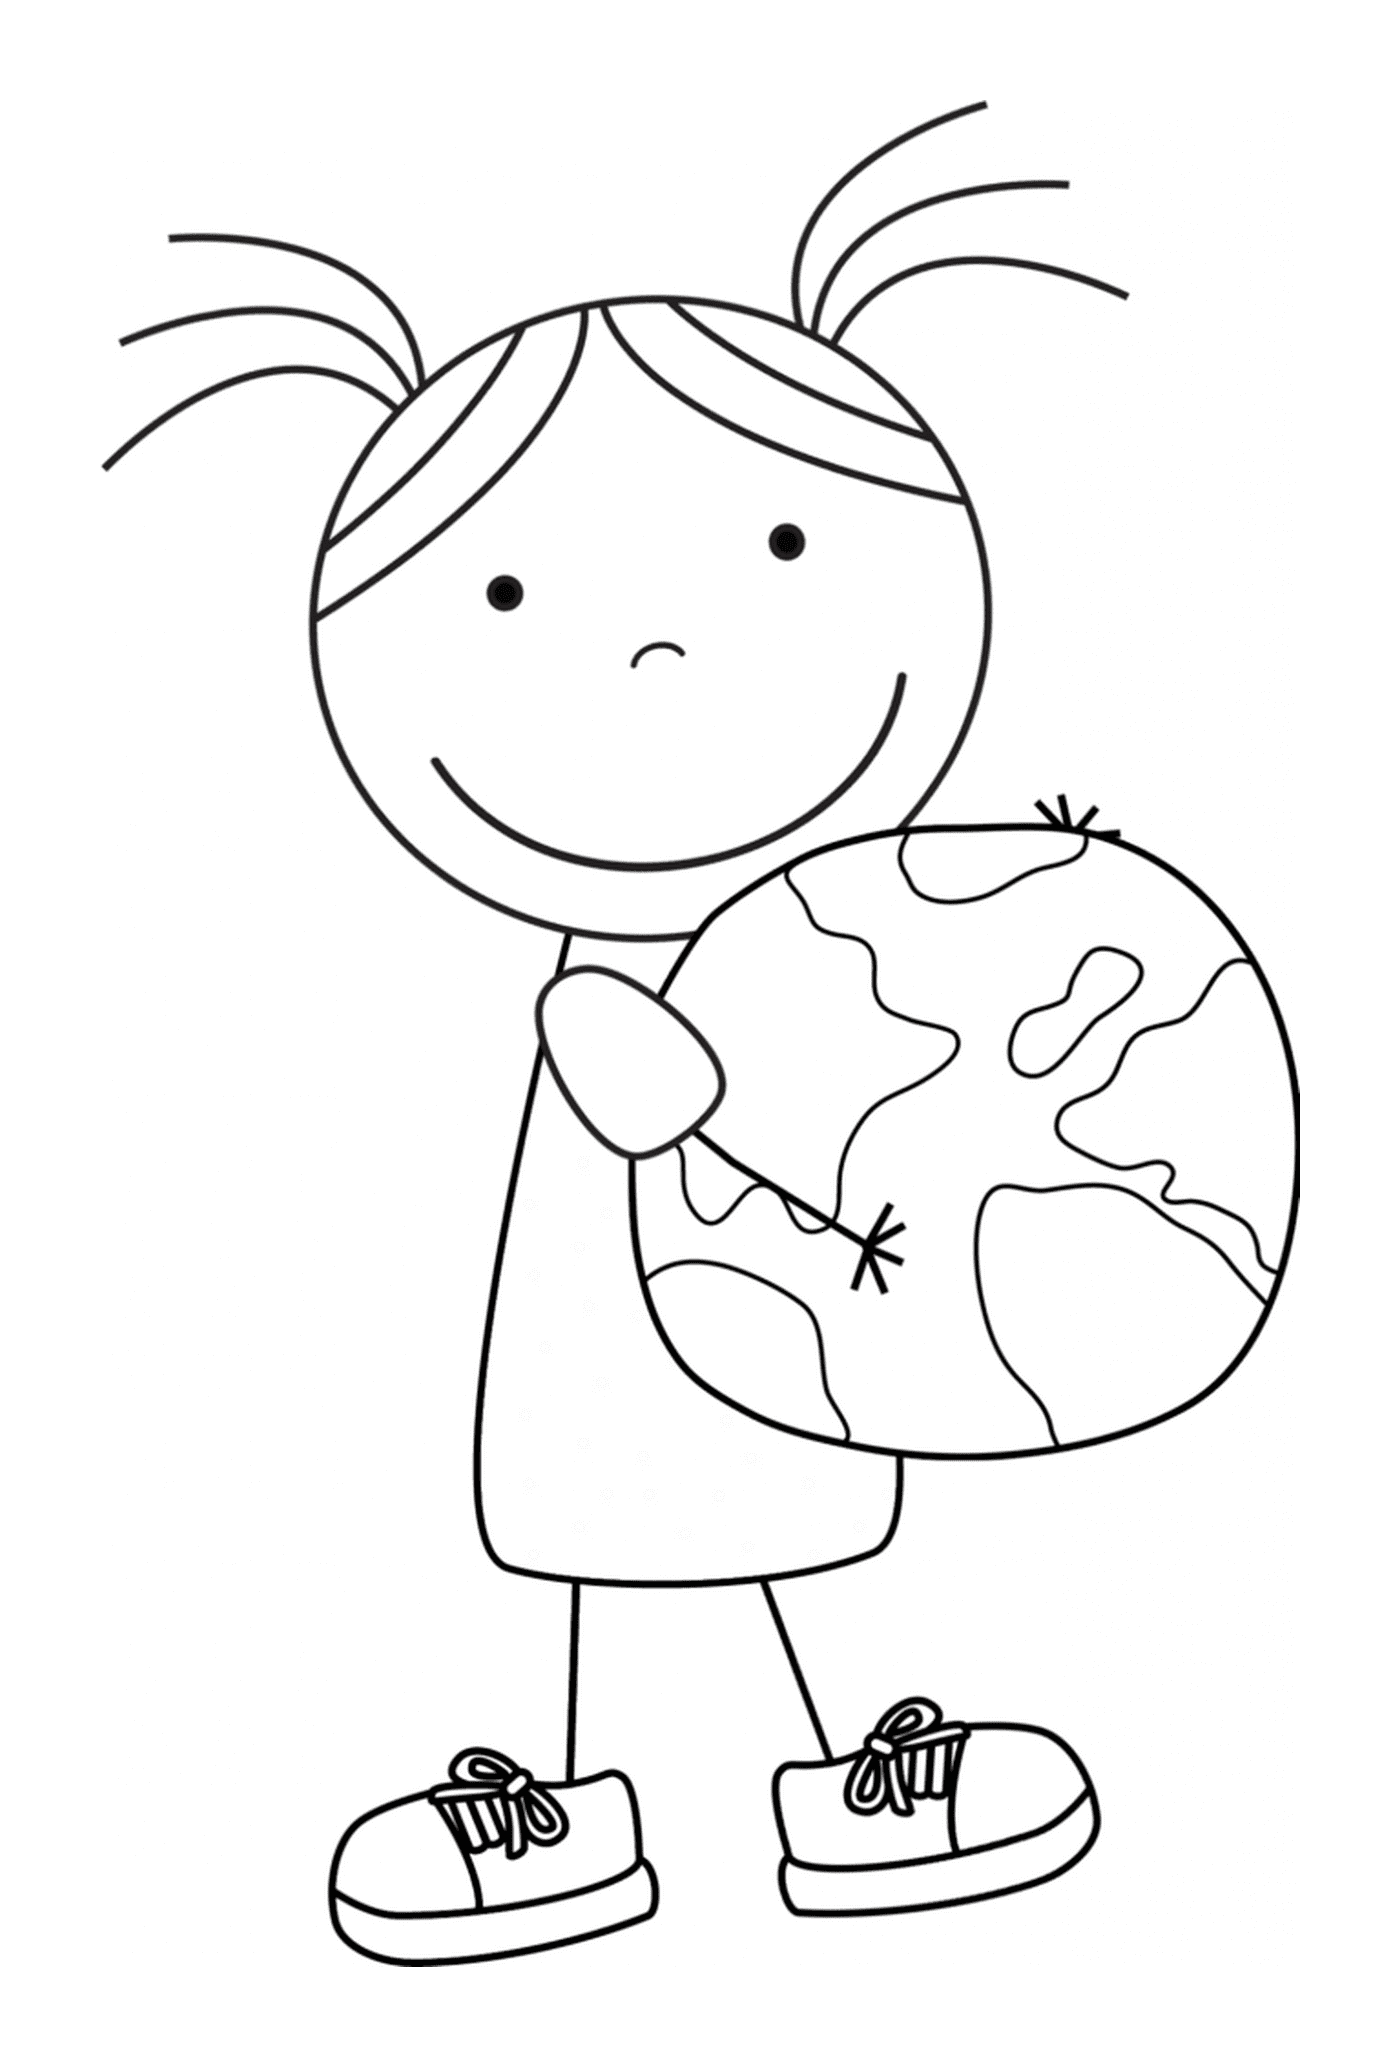  La niña sostiene la Tierra, un símbolo ecológico 